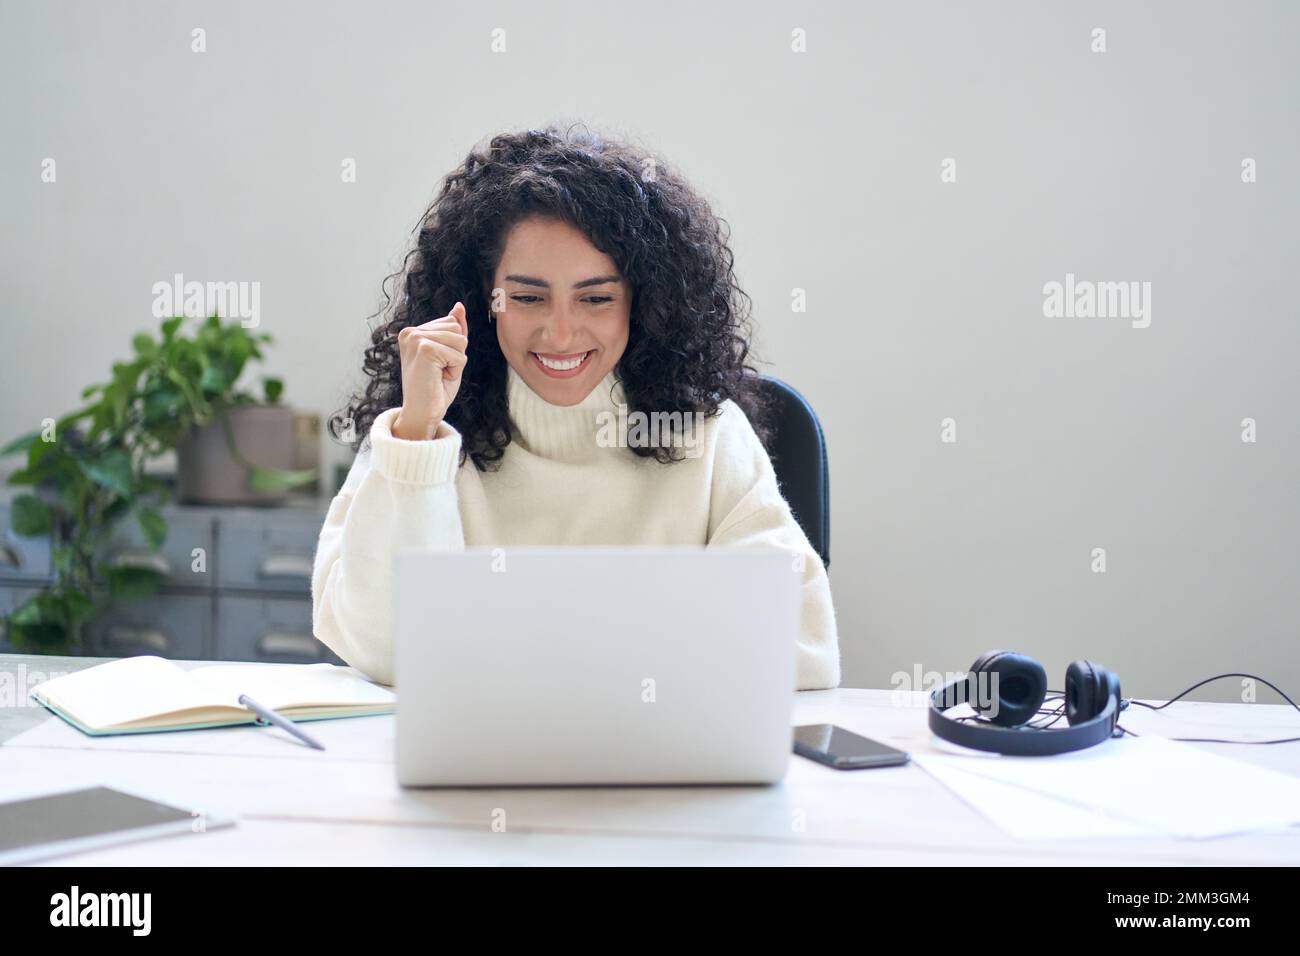 Jeune femme heureuse étudiante ou employée utilisant un ordinateur portable se sentant excitée. Banque D'Images